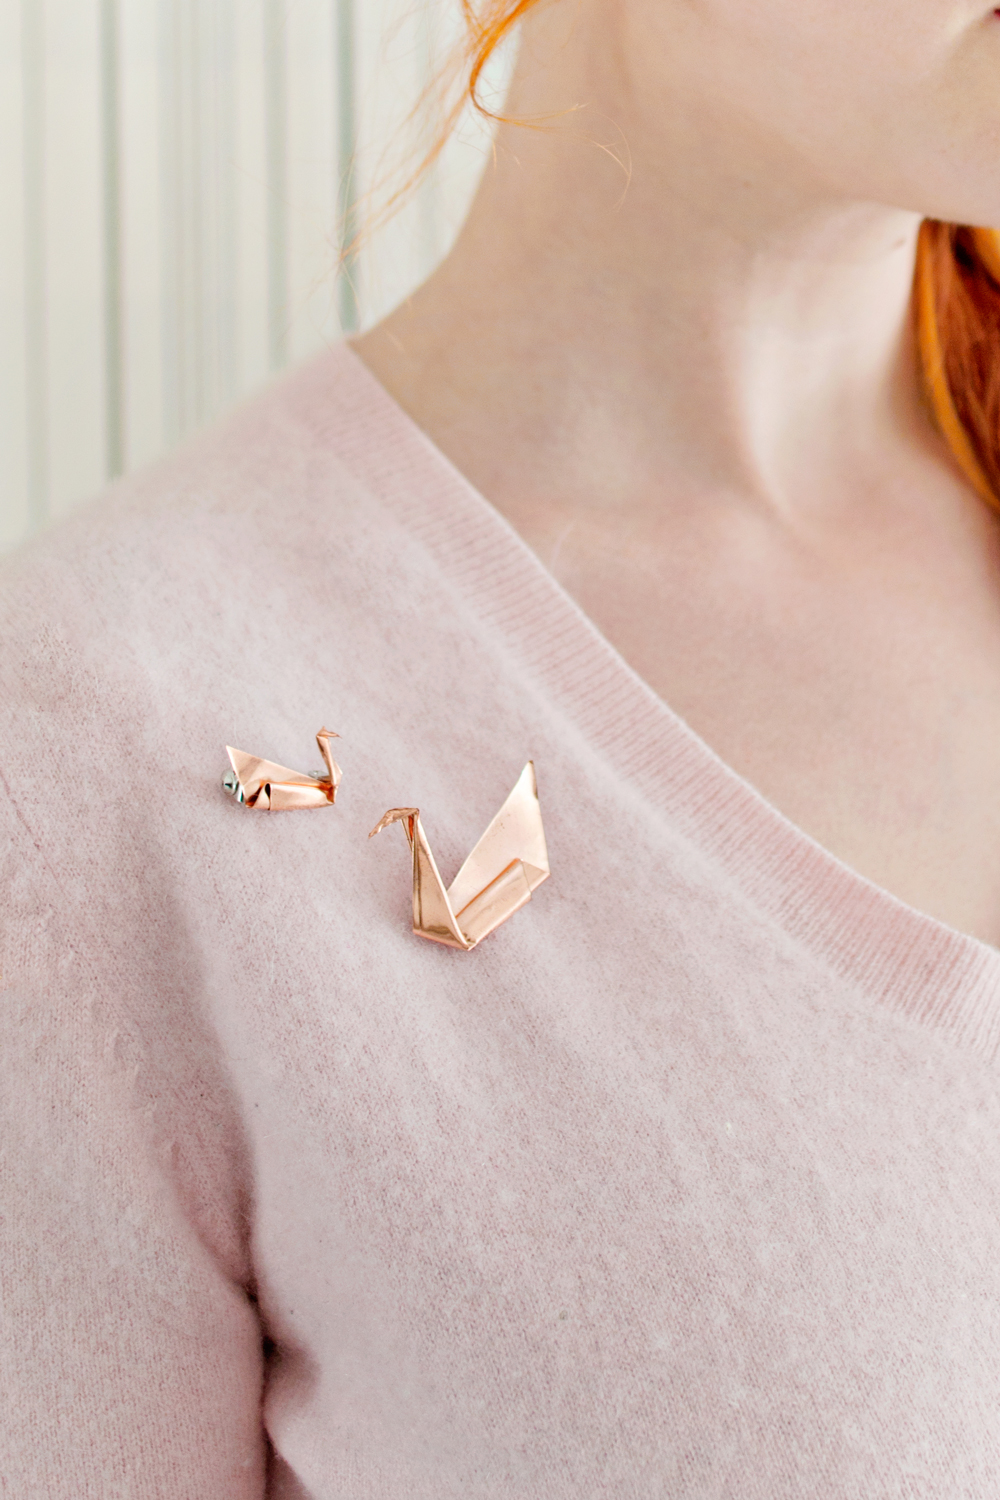 DIY | Copper Origami Brooch